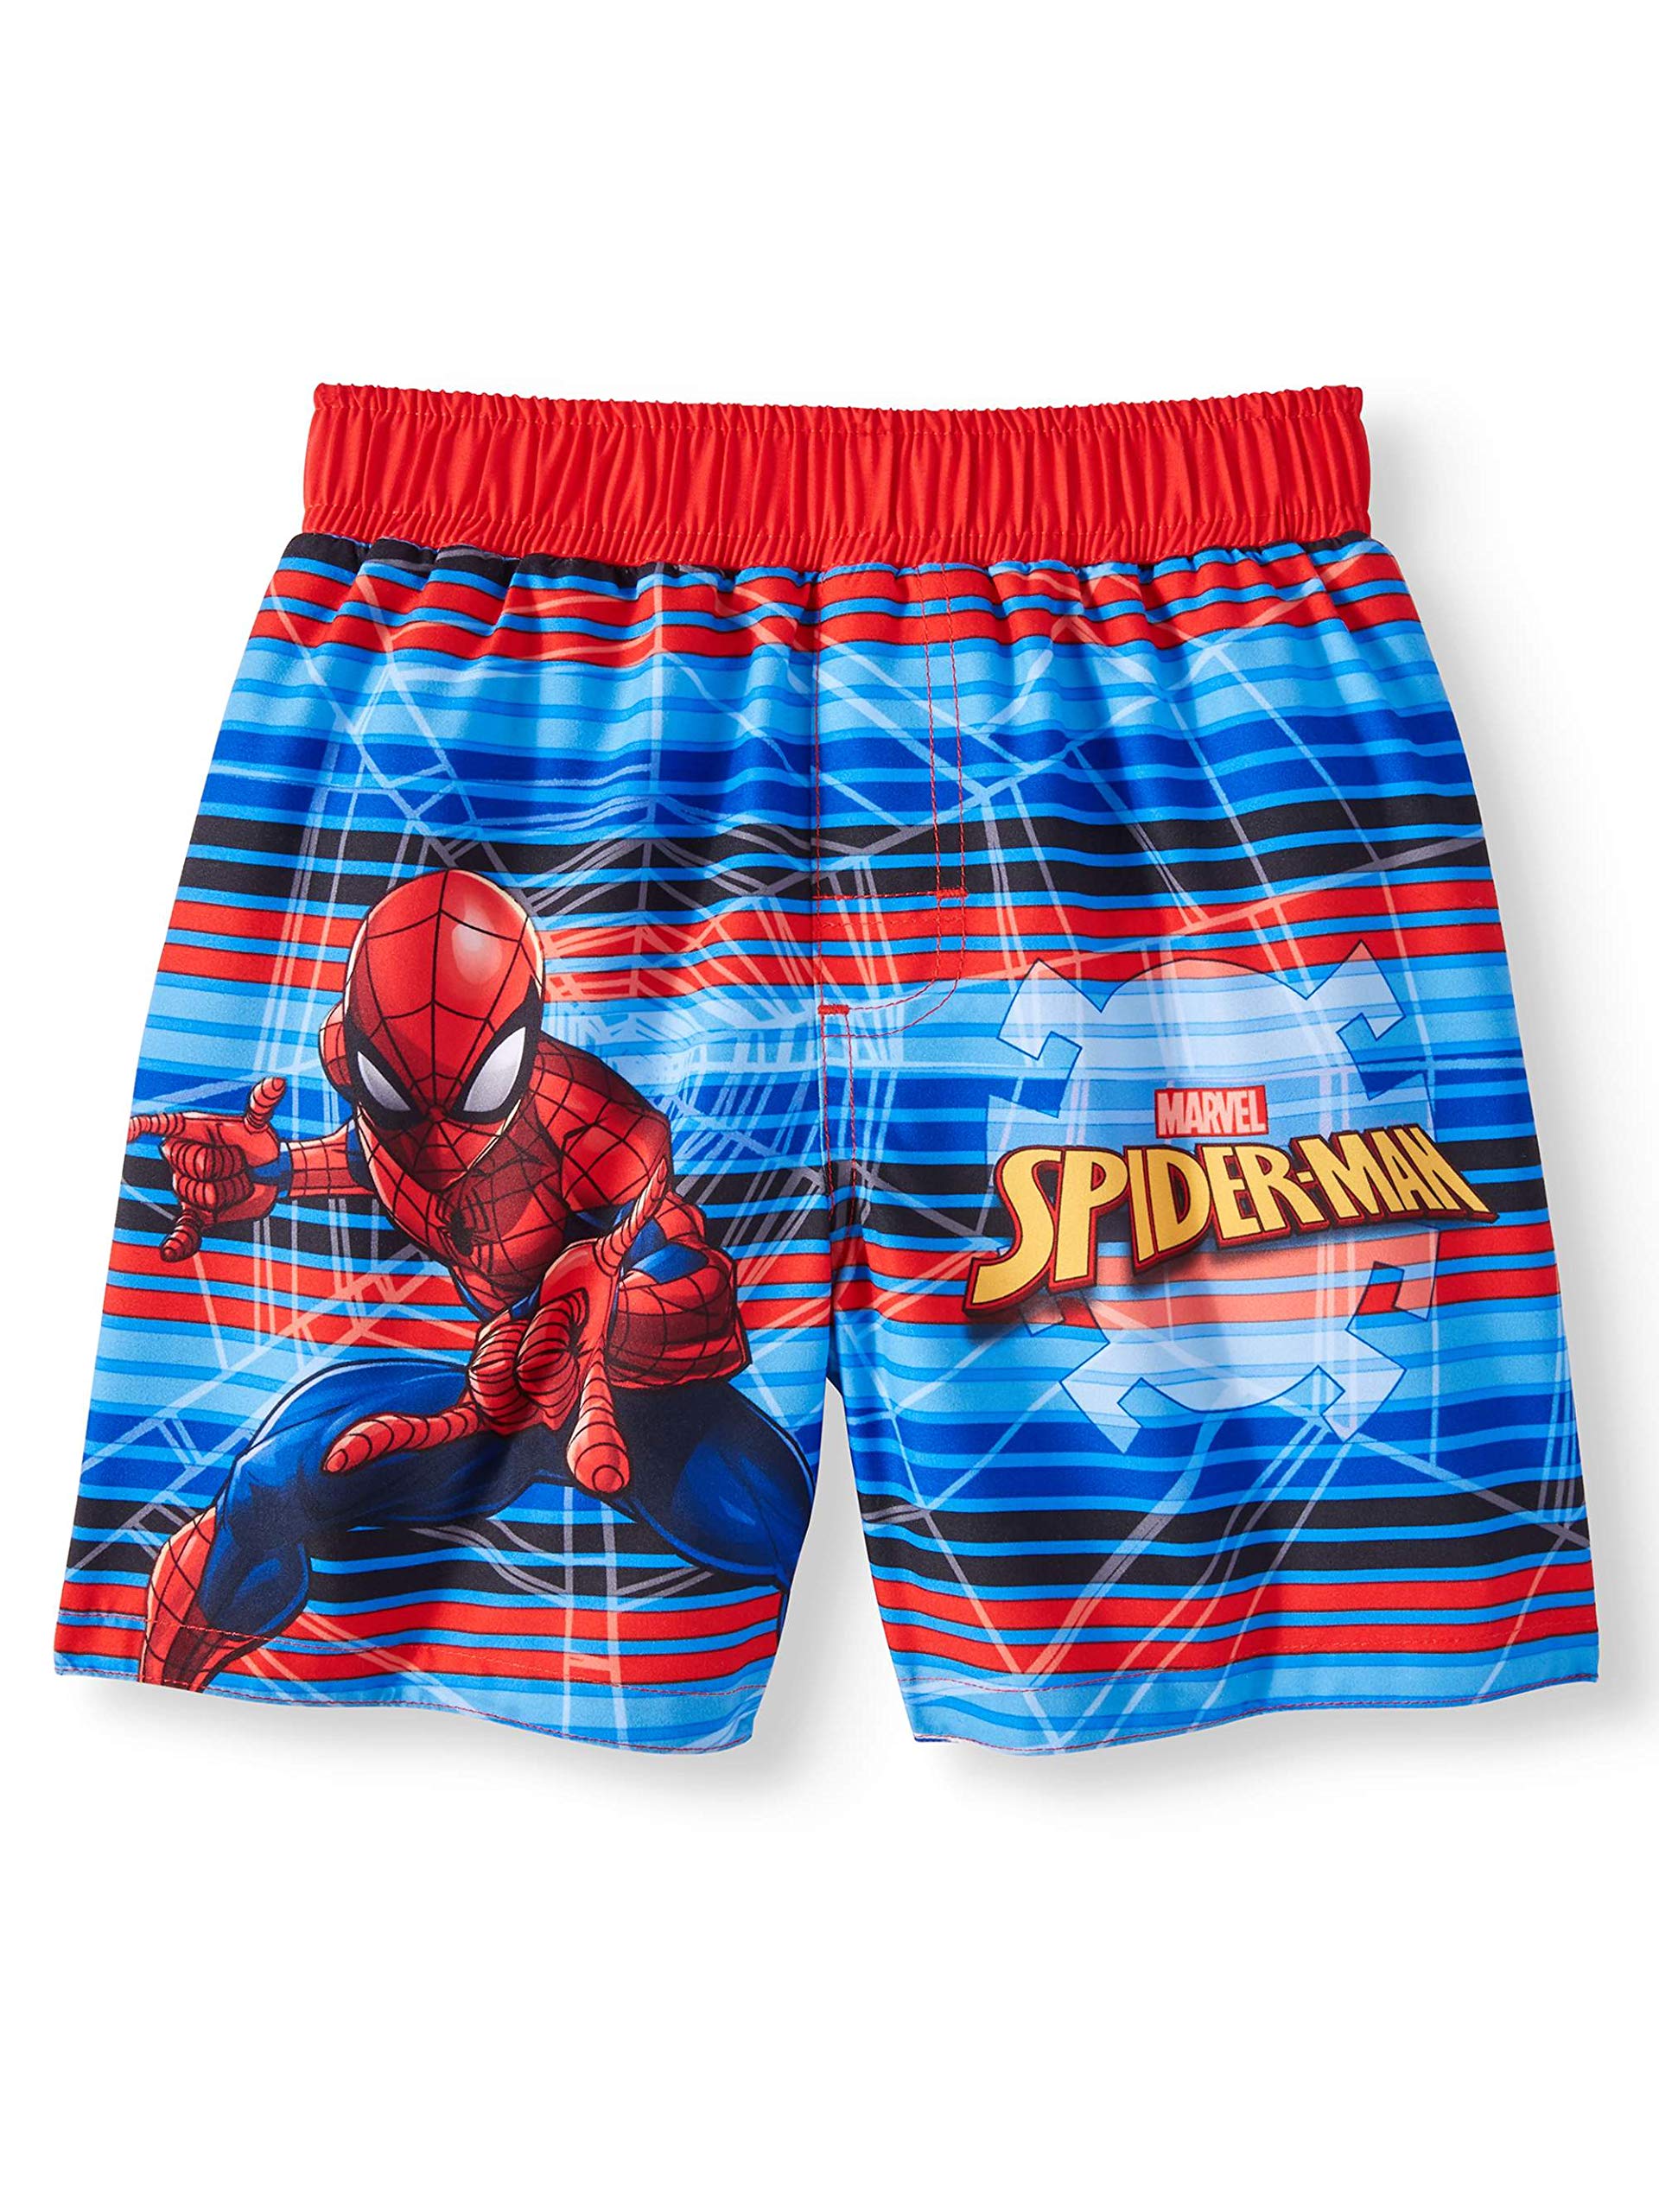 Marvel Spider-Man Boy Swim Trunks Shorts Size 5T